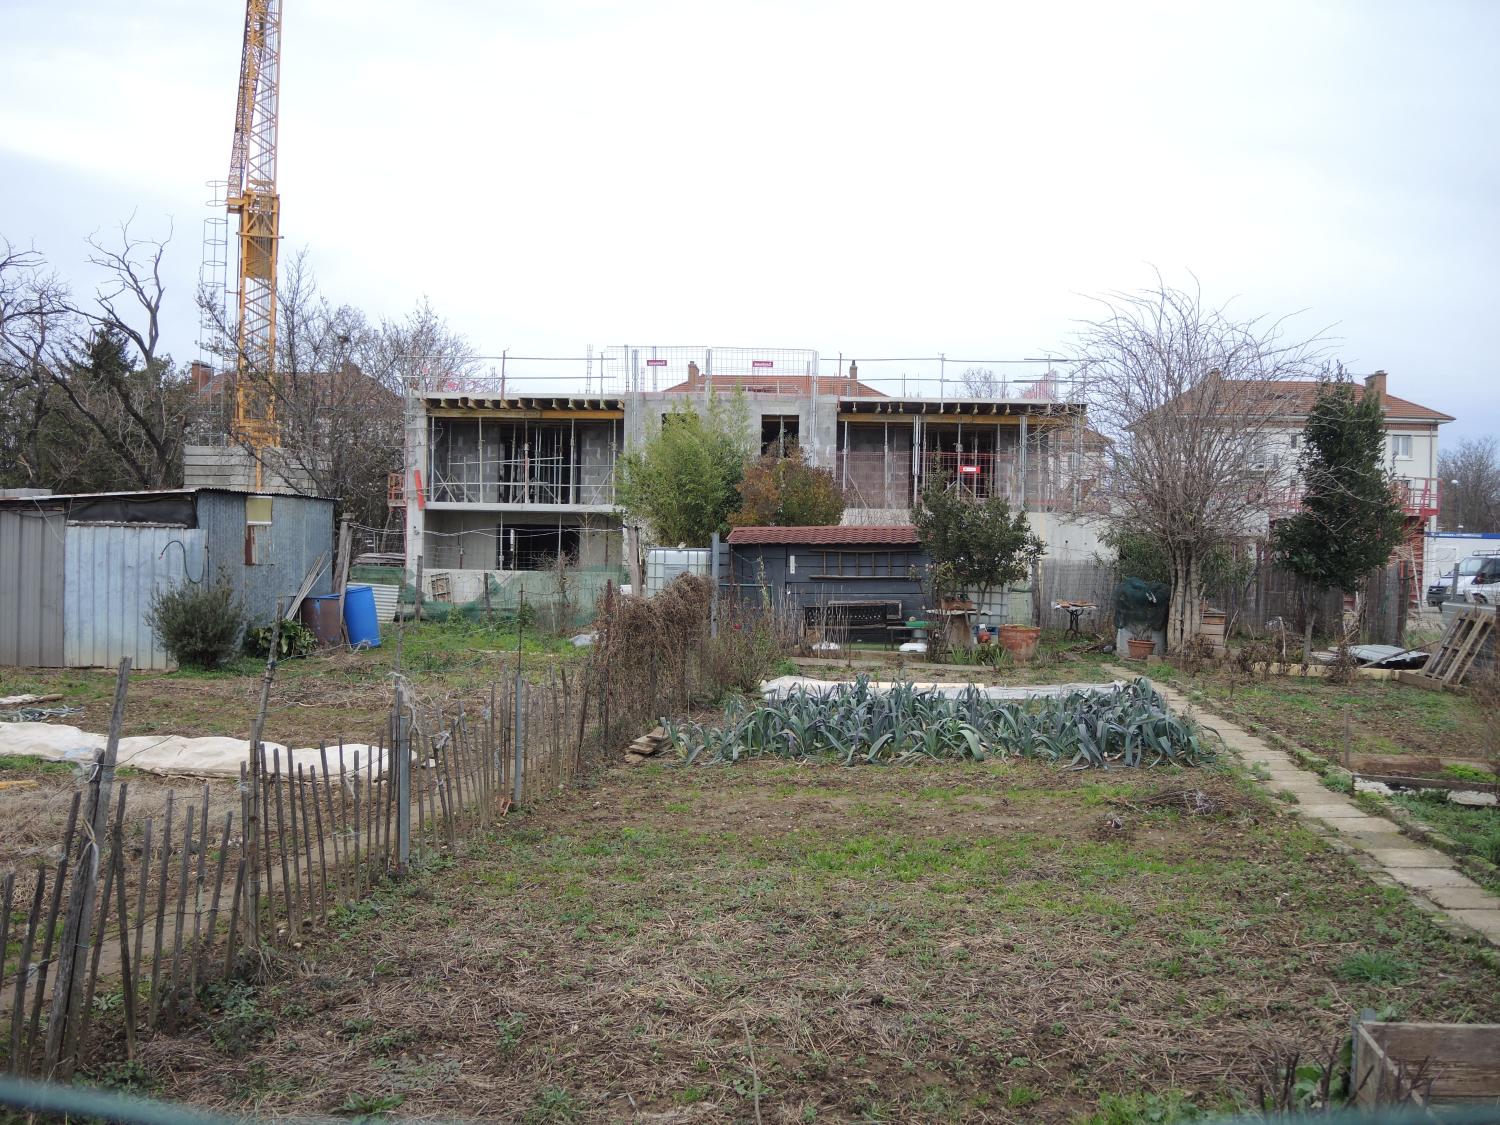 Jardins ouvriers dit jardins cheminots de Saint-Priest et cité SNCF